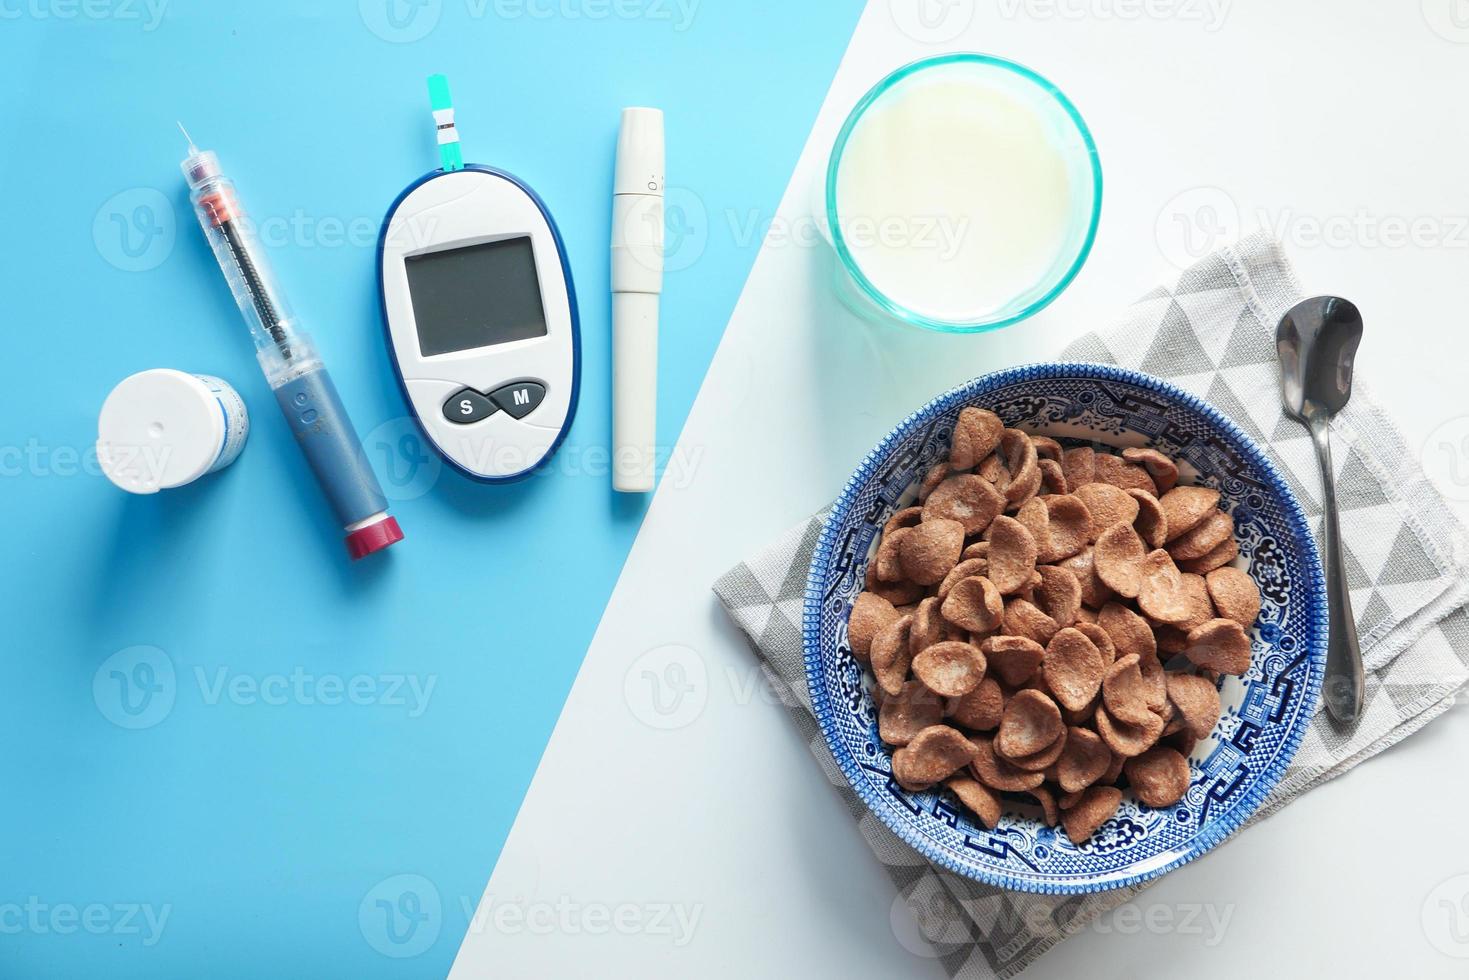 céréales et lait avec insuline et outils diabétiques photo